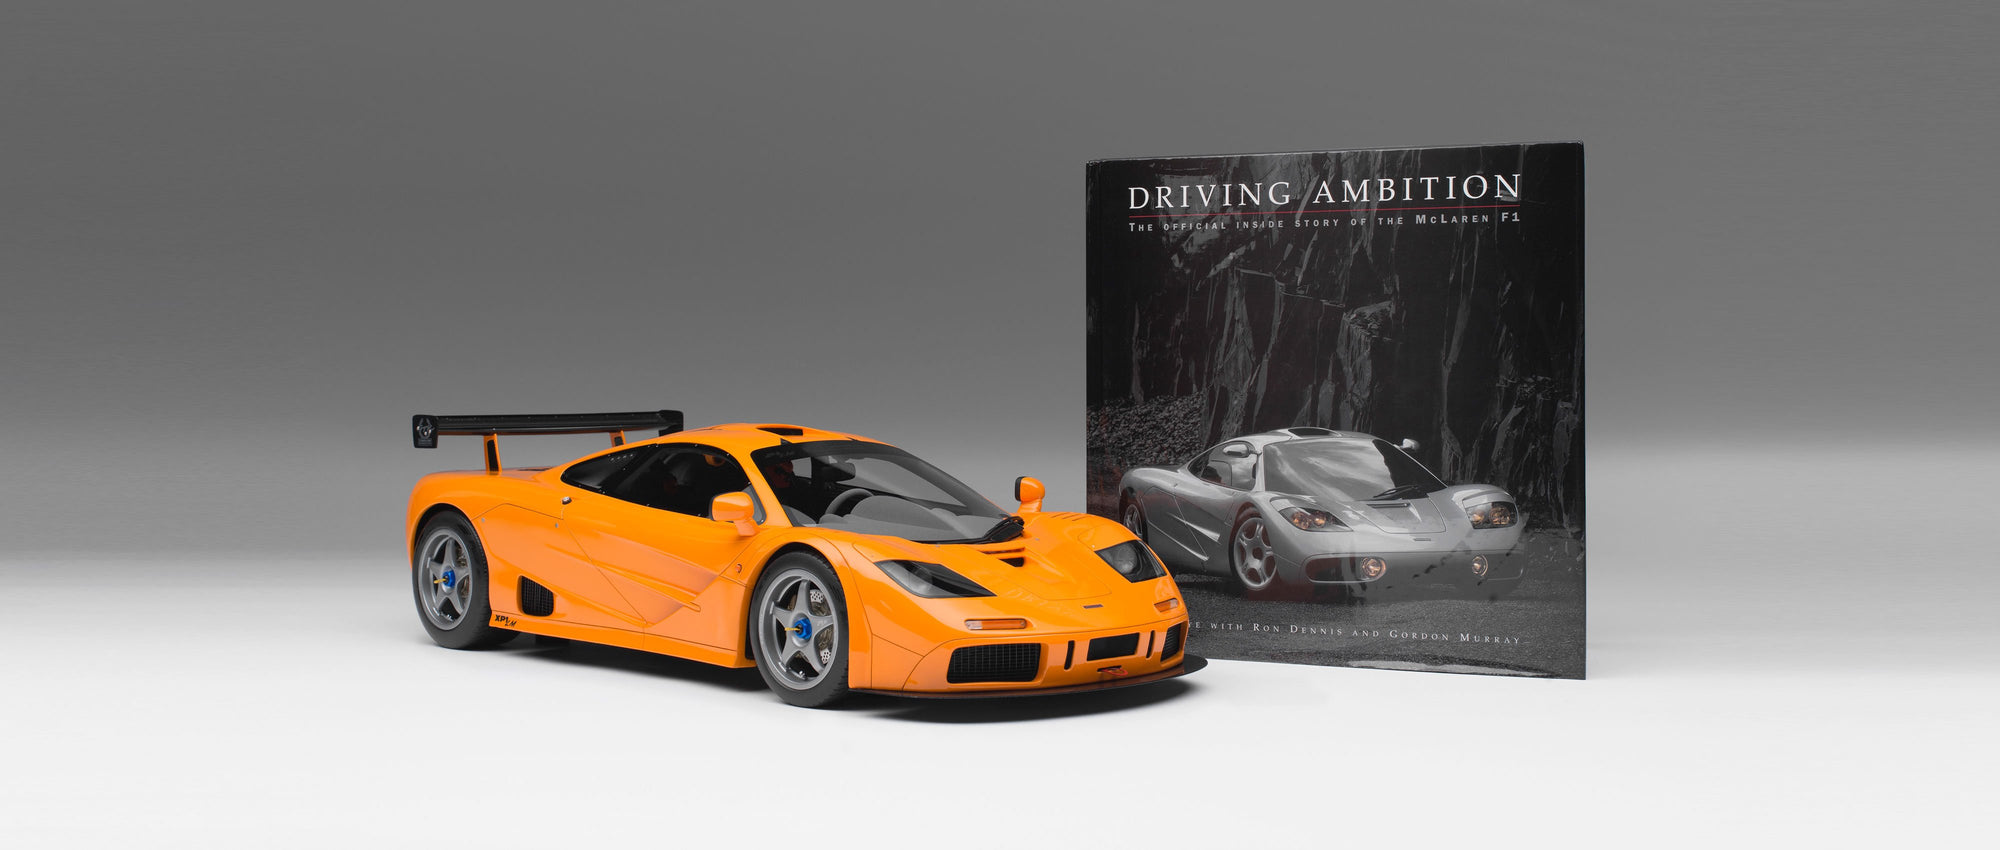 迈凯伦F1 LM配套附戈登·穆雷签名的专属精装书《Driving Ambition》